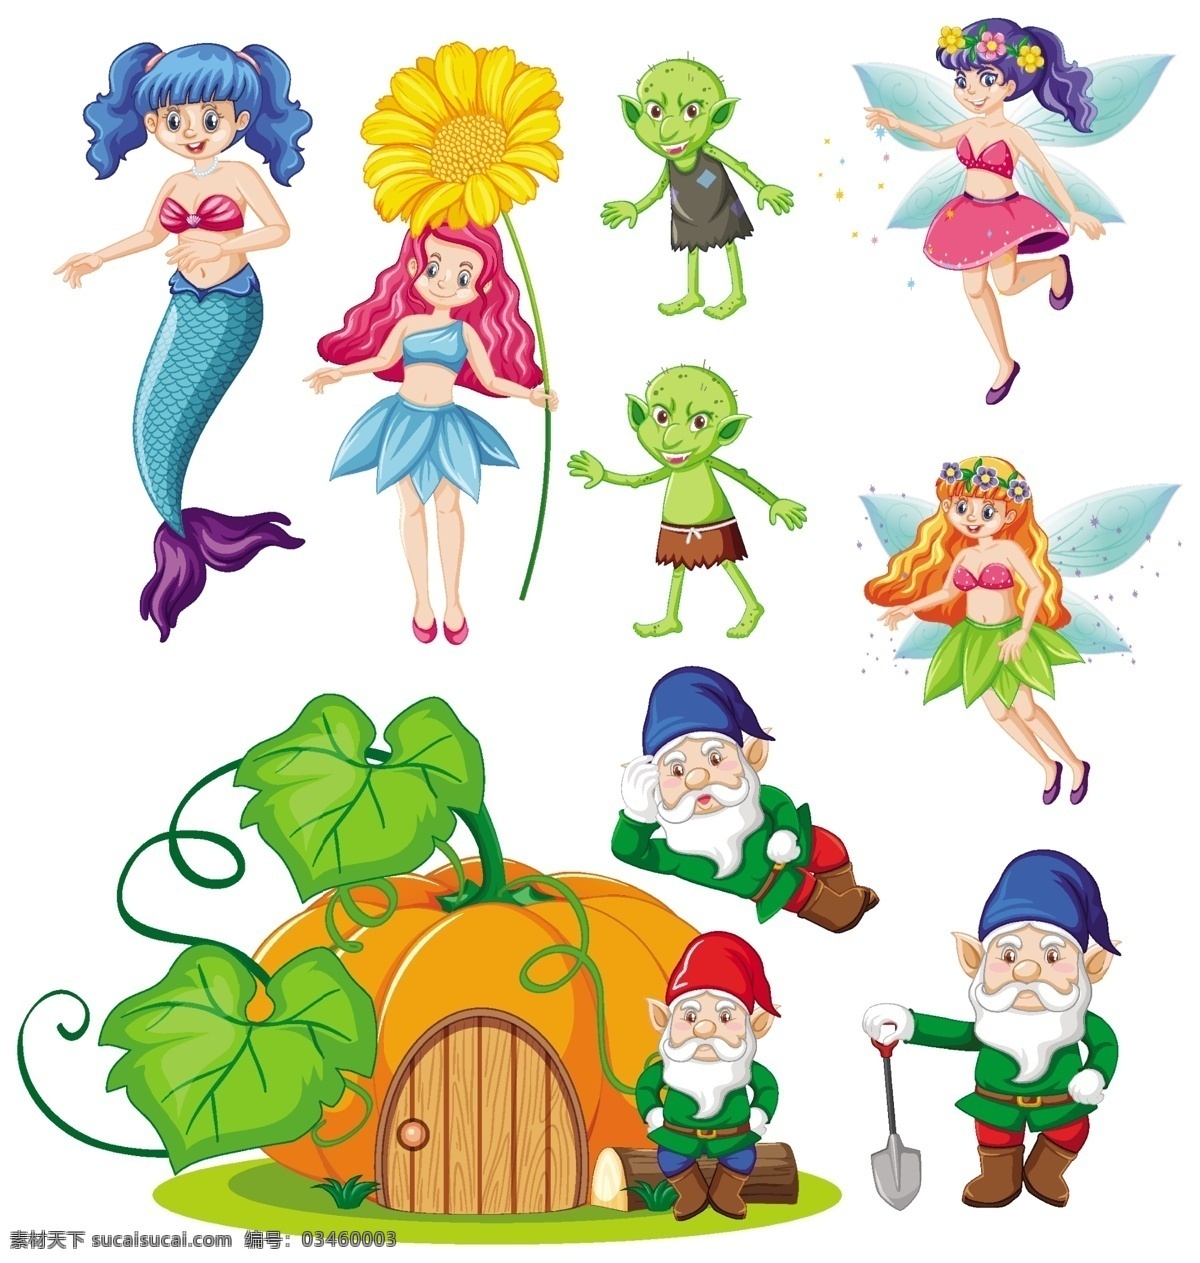 卡通小仙女 小仙女 小精灵 童话故事 儿童 快乐儿童 人物 生活儿童 学生 可爱 儿童素材 卡通设计